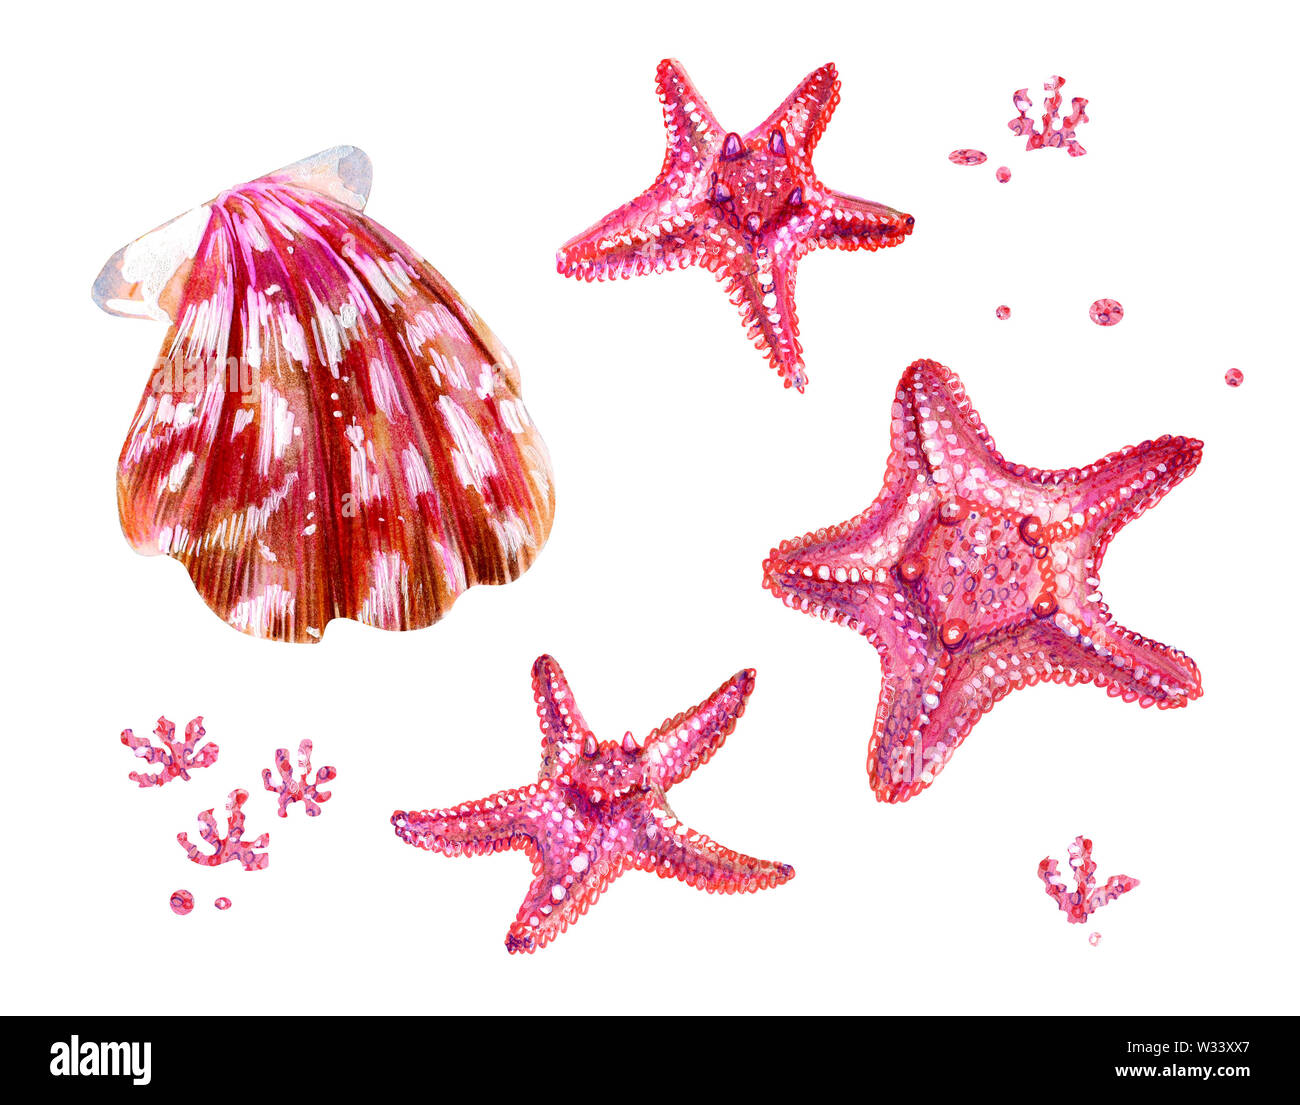 Ensemble de coquillages des pétoncles et des étoiles de mer. Le rose et la nacre clam Pectinidae et les algues. Nature de l'océan mondial. Résident sous l'eau. Été Banque D'Images